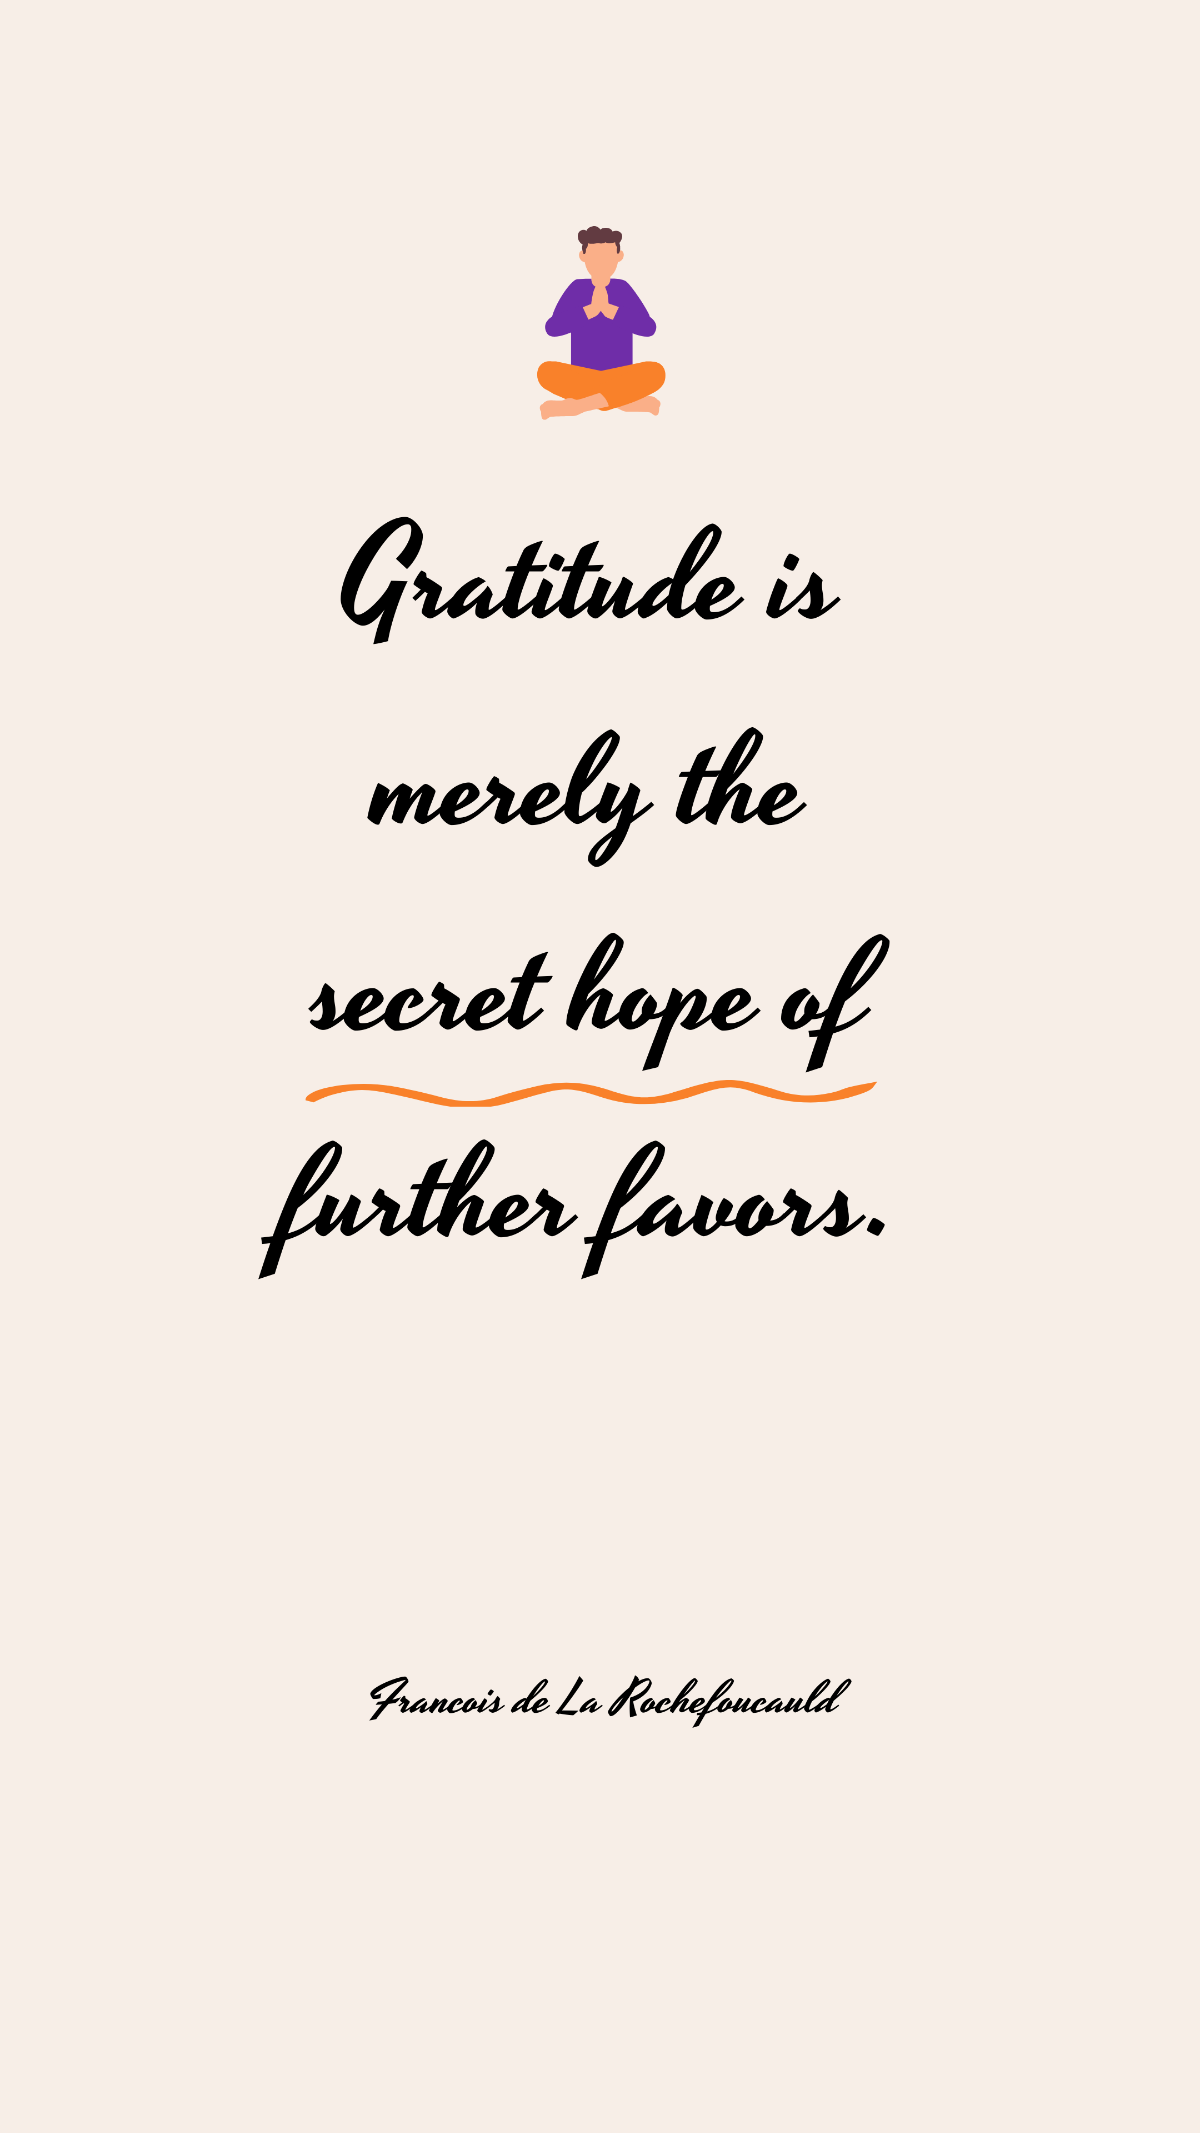 Francois de La Rochefoucauld - Gratitude is merely the secret hope of further favors. Template